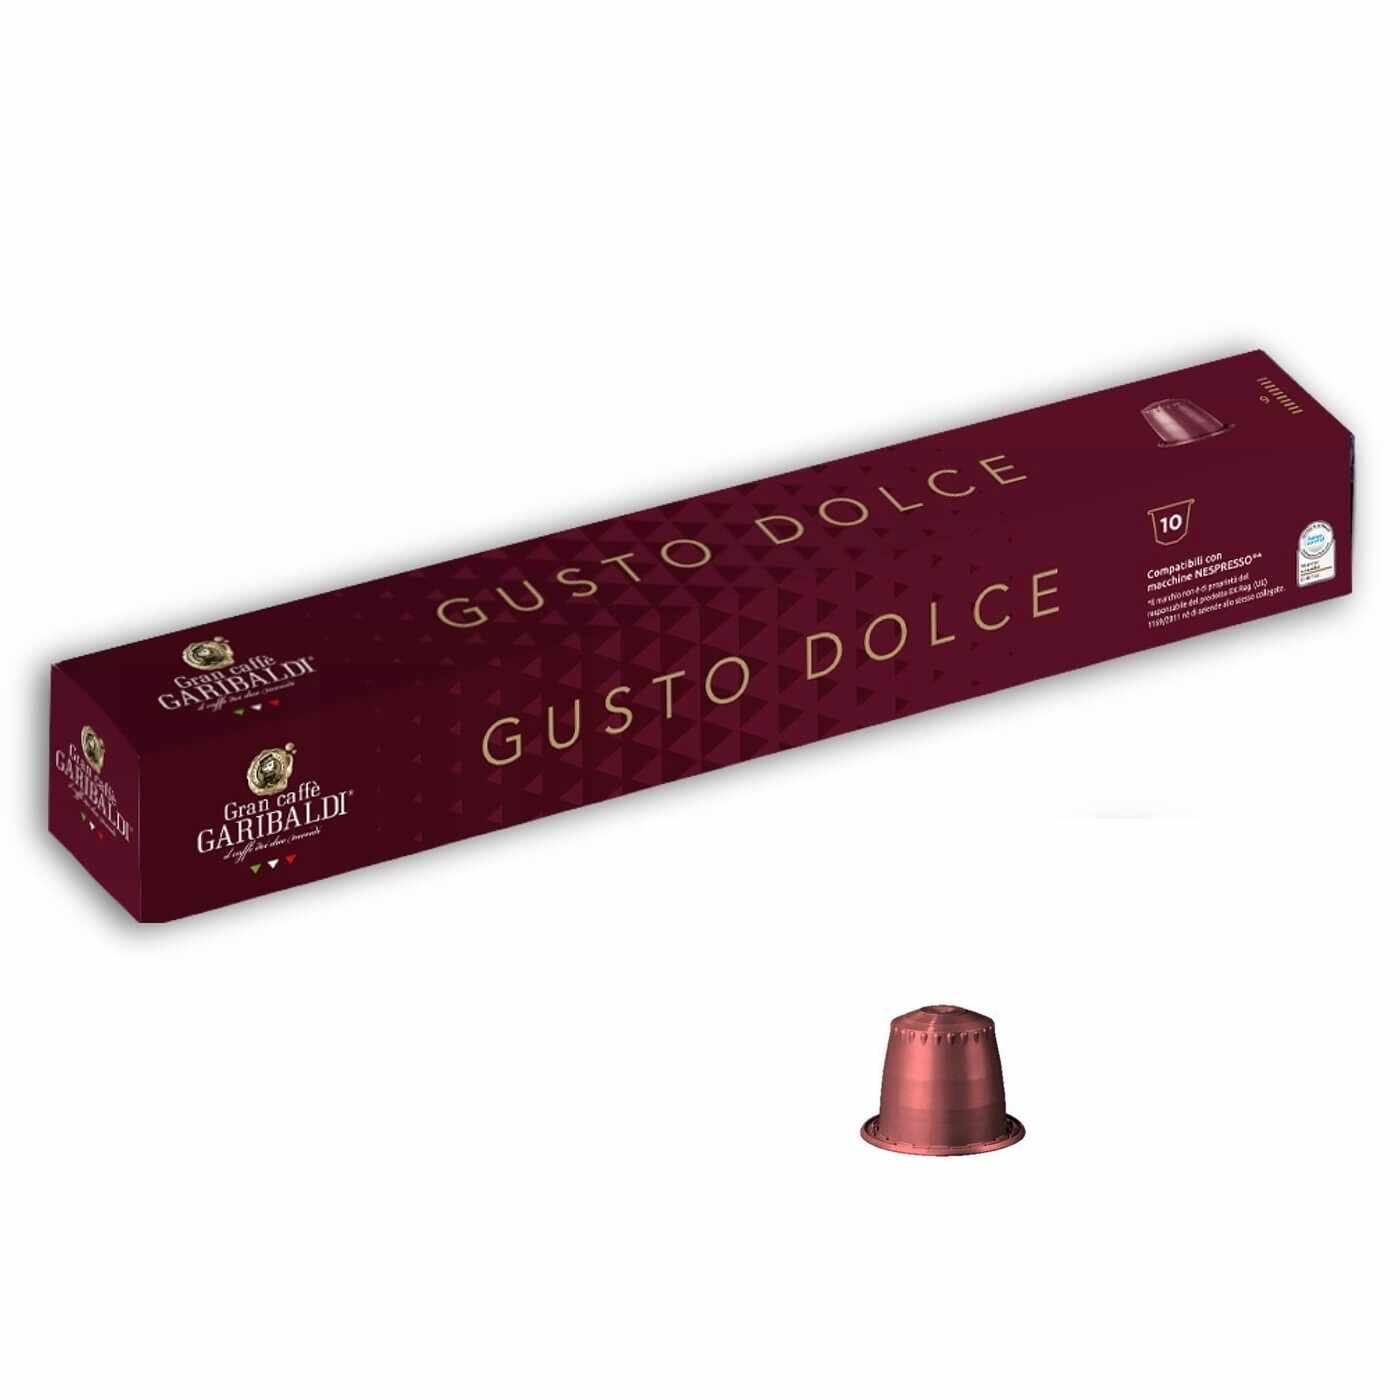 Garibaldi Gusto Dolce capsule compatibile Nespresso 10 buc